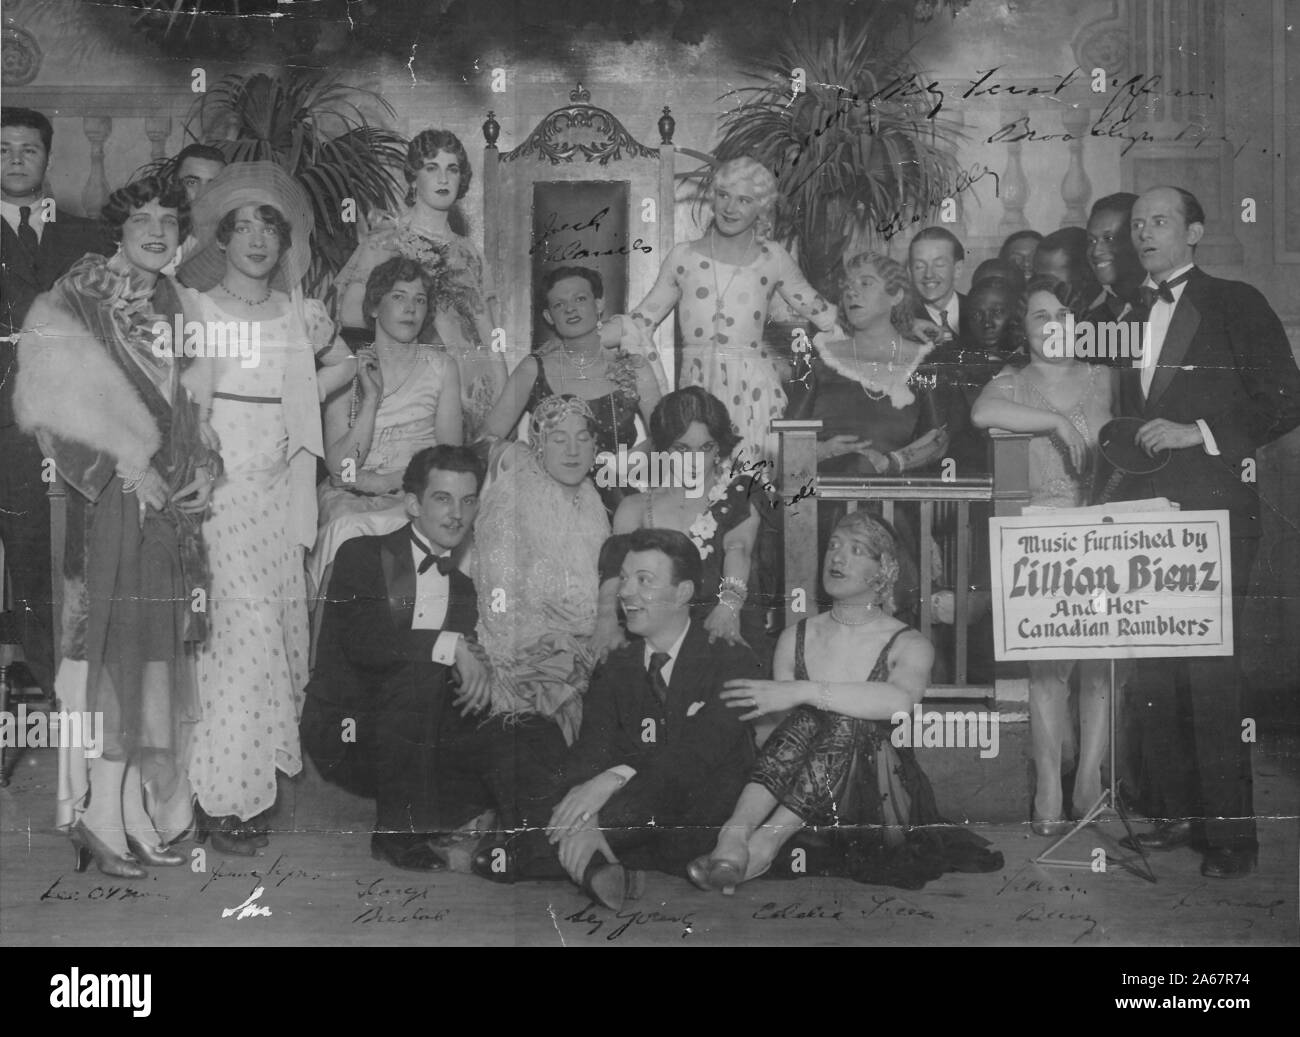 Un grupo de reinas de arrastre, O los hombres vestidos con arrastrar, posan para una foto de grupo frente a un telón de fondo con una gran silla de la corona, muchos en vestidos y ropa elegante, con la señal que señala que la música fue proporcionada por Lillian Benz y sus Ramblers canadienses, un grupo musical, Brooklyn, Nueva York, 1929. () Foto de stock